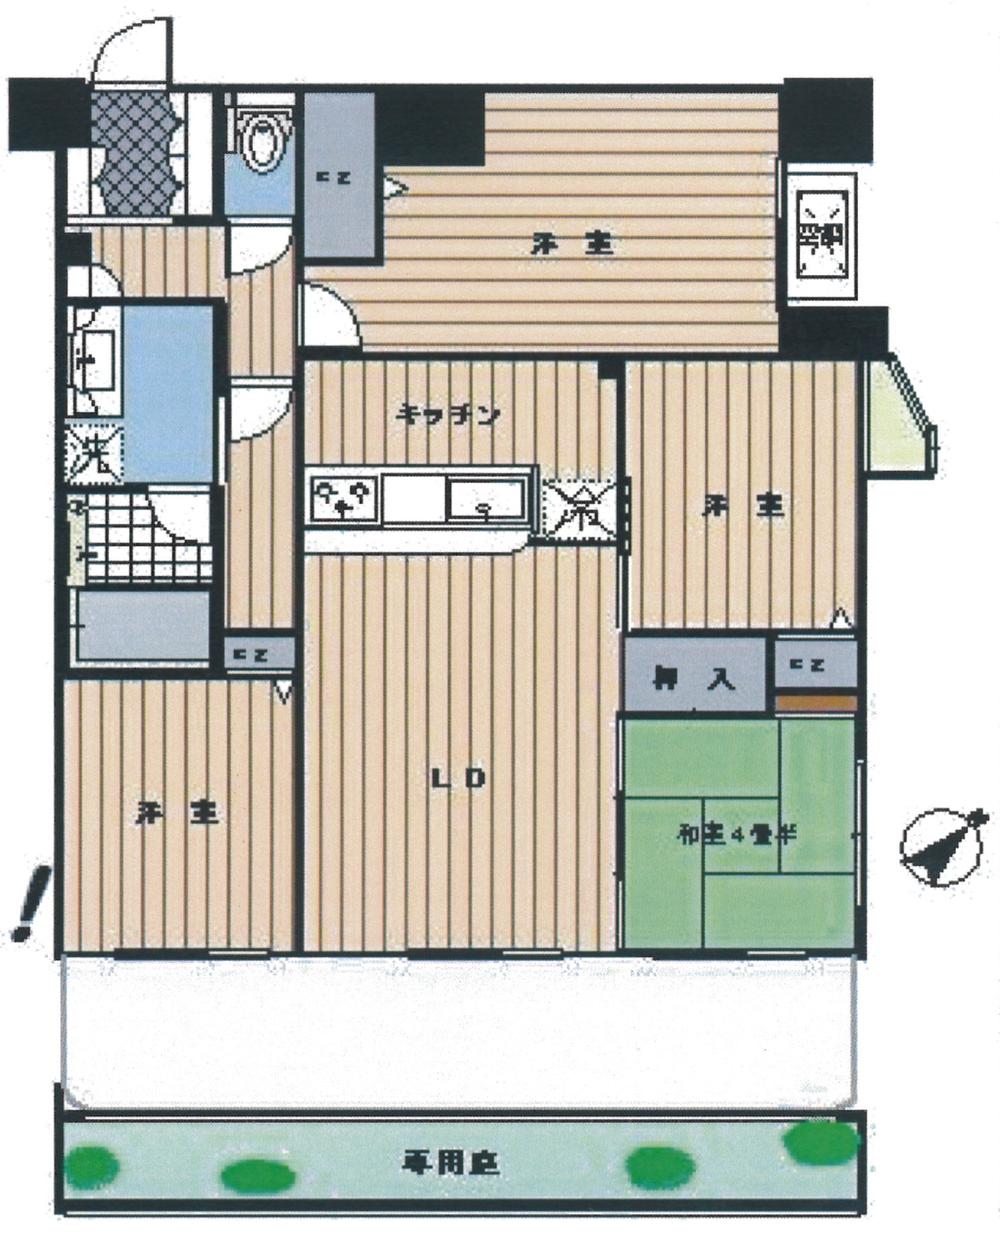 Floor plan. 4LDK, Price 19,990,000 yen, Occupied area 76.53 sq m , Balcony area 18.94 sq m indoor (December 2013) Shooting